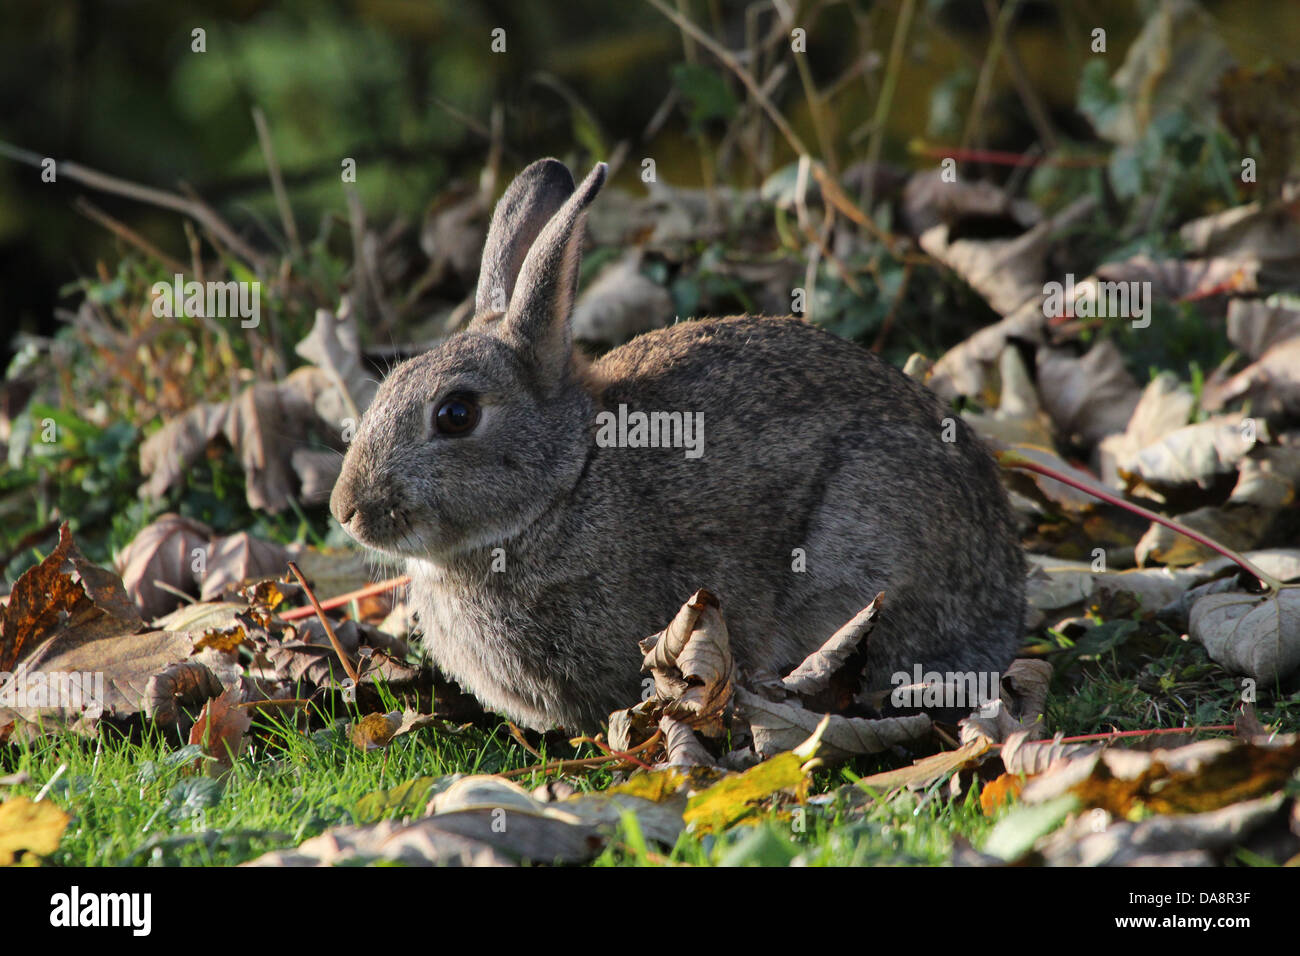 Série de très gros plans détaillés de lapins (Oryctolagus cuniculus) l'alimentation, plus de 60 images en série Banque D'Images